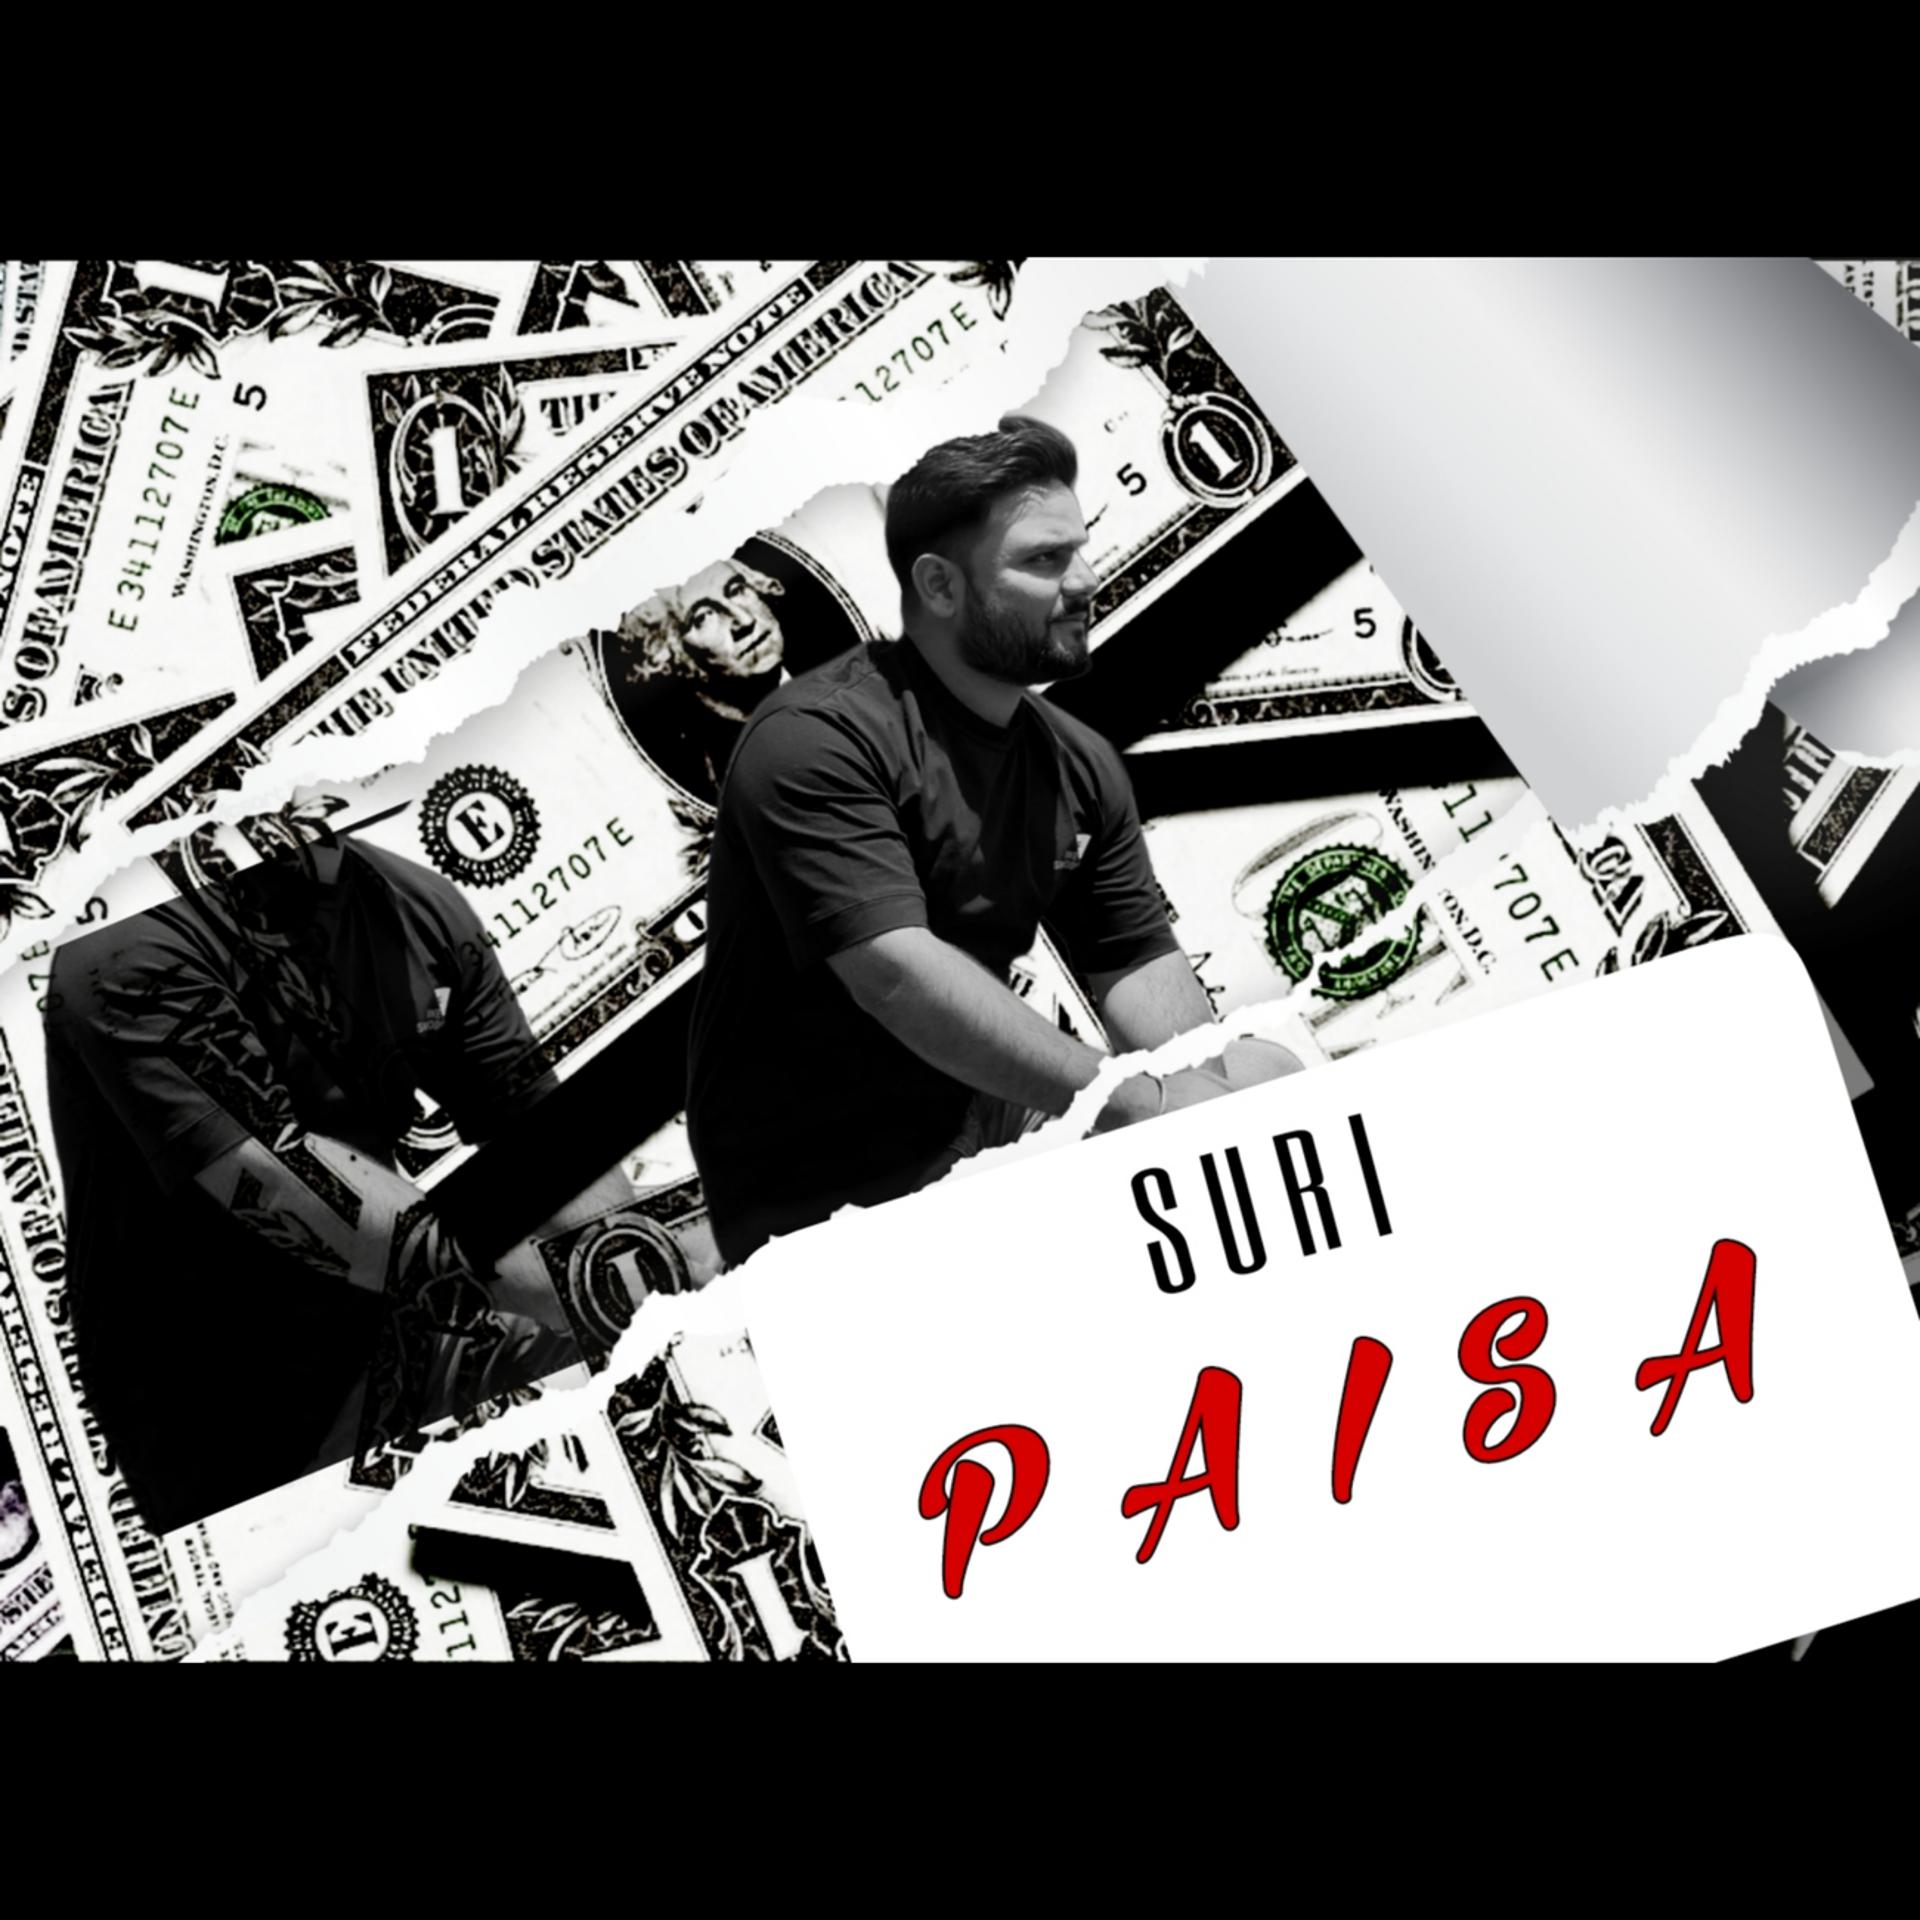 Постер альбома Paisa